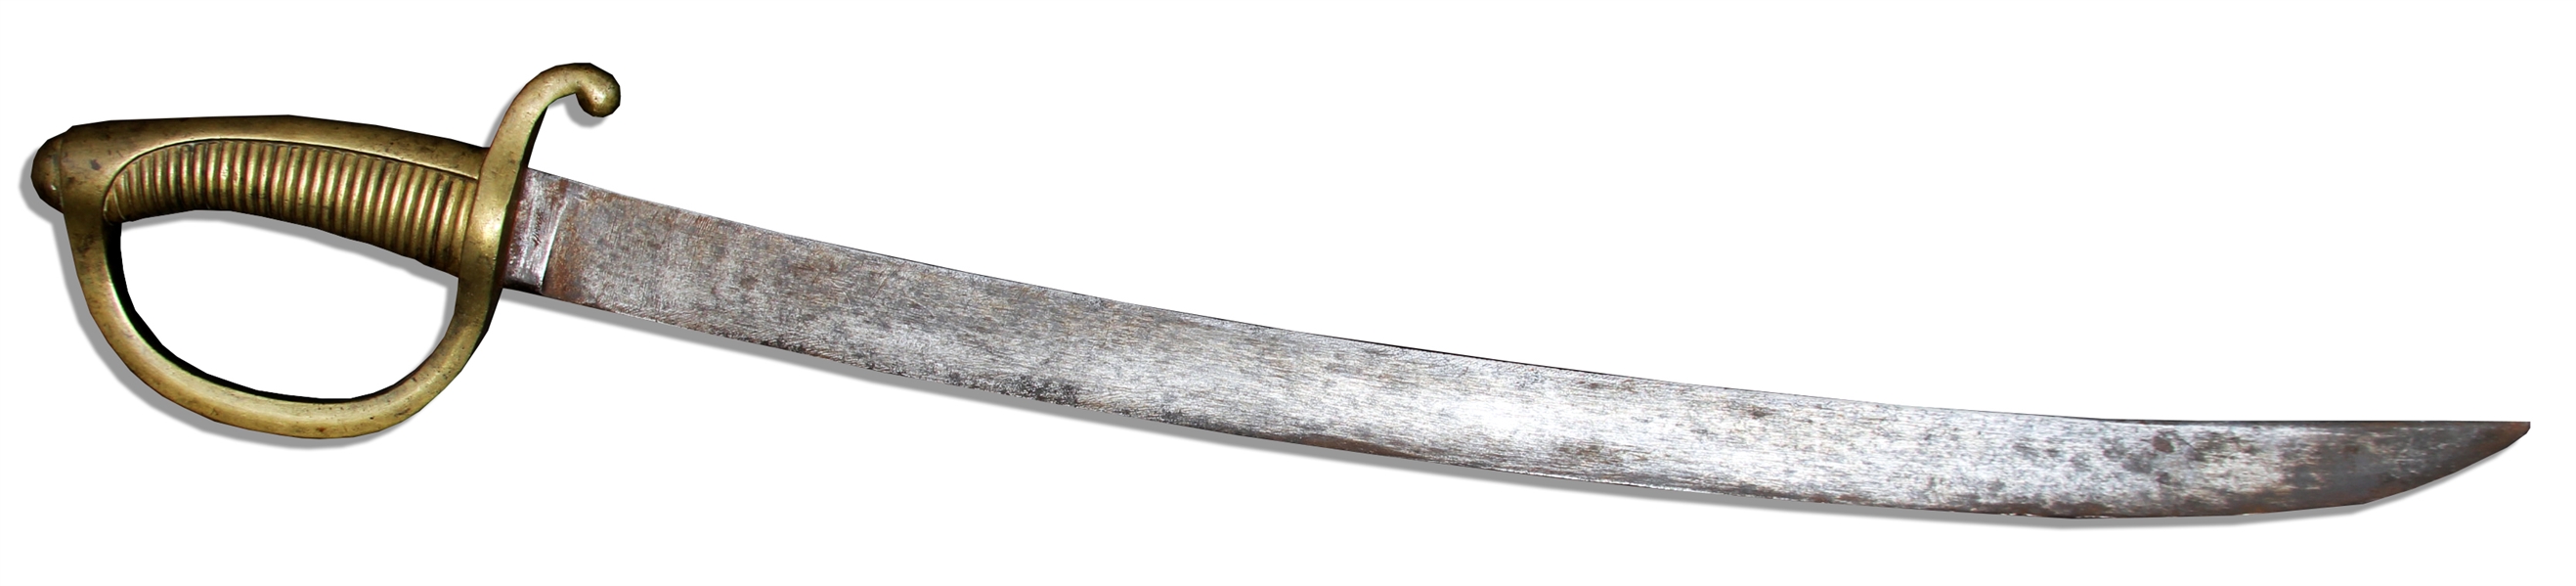 Mid-1800's Short Sword